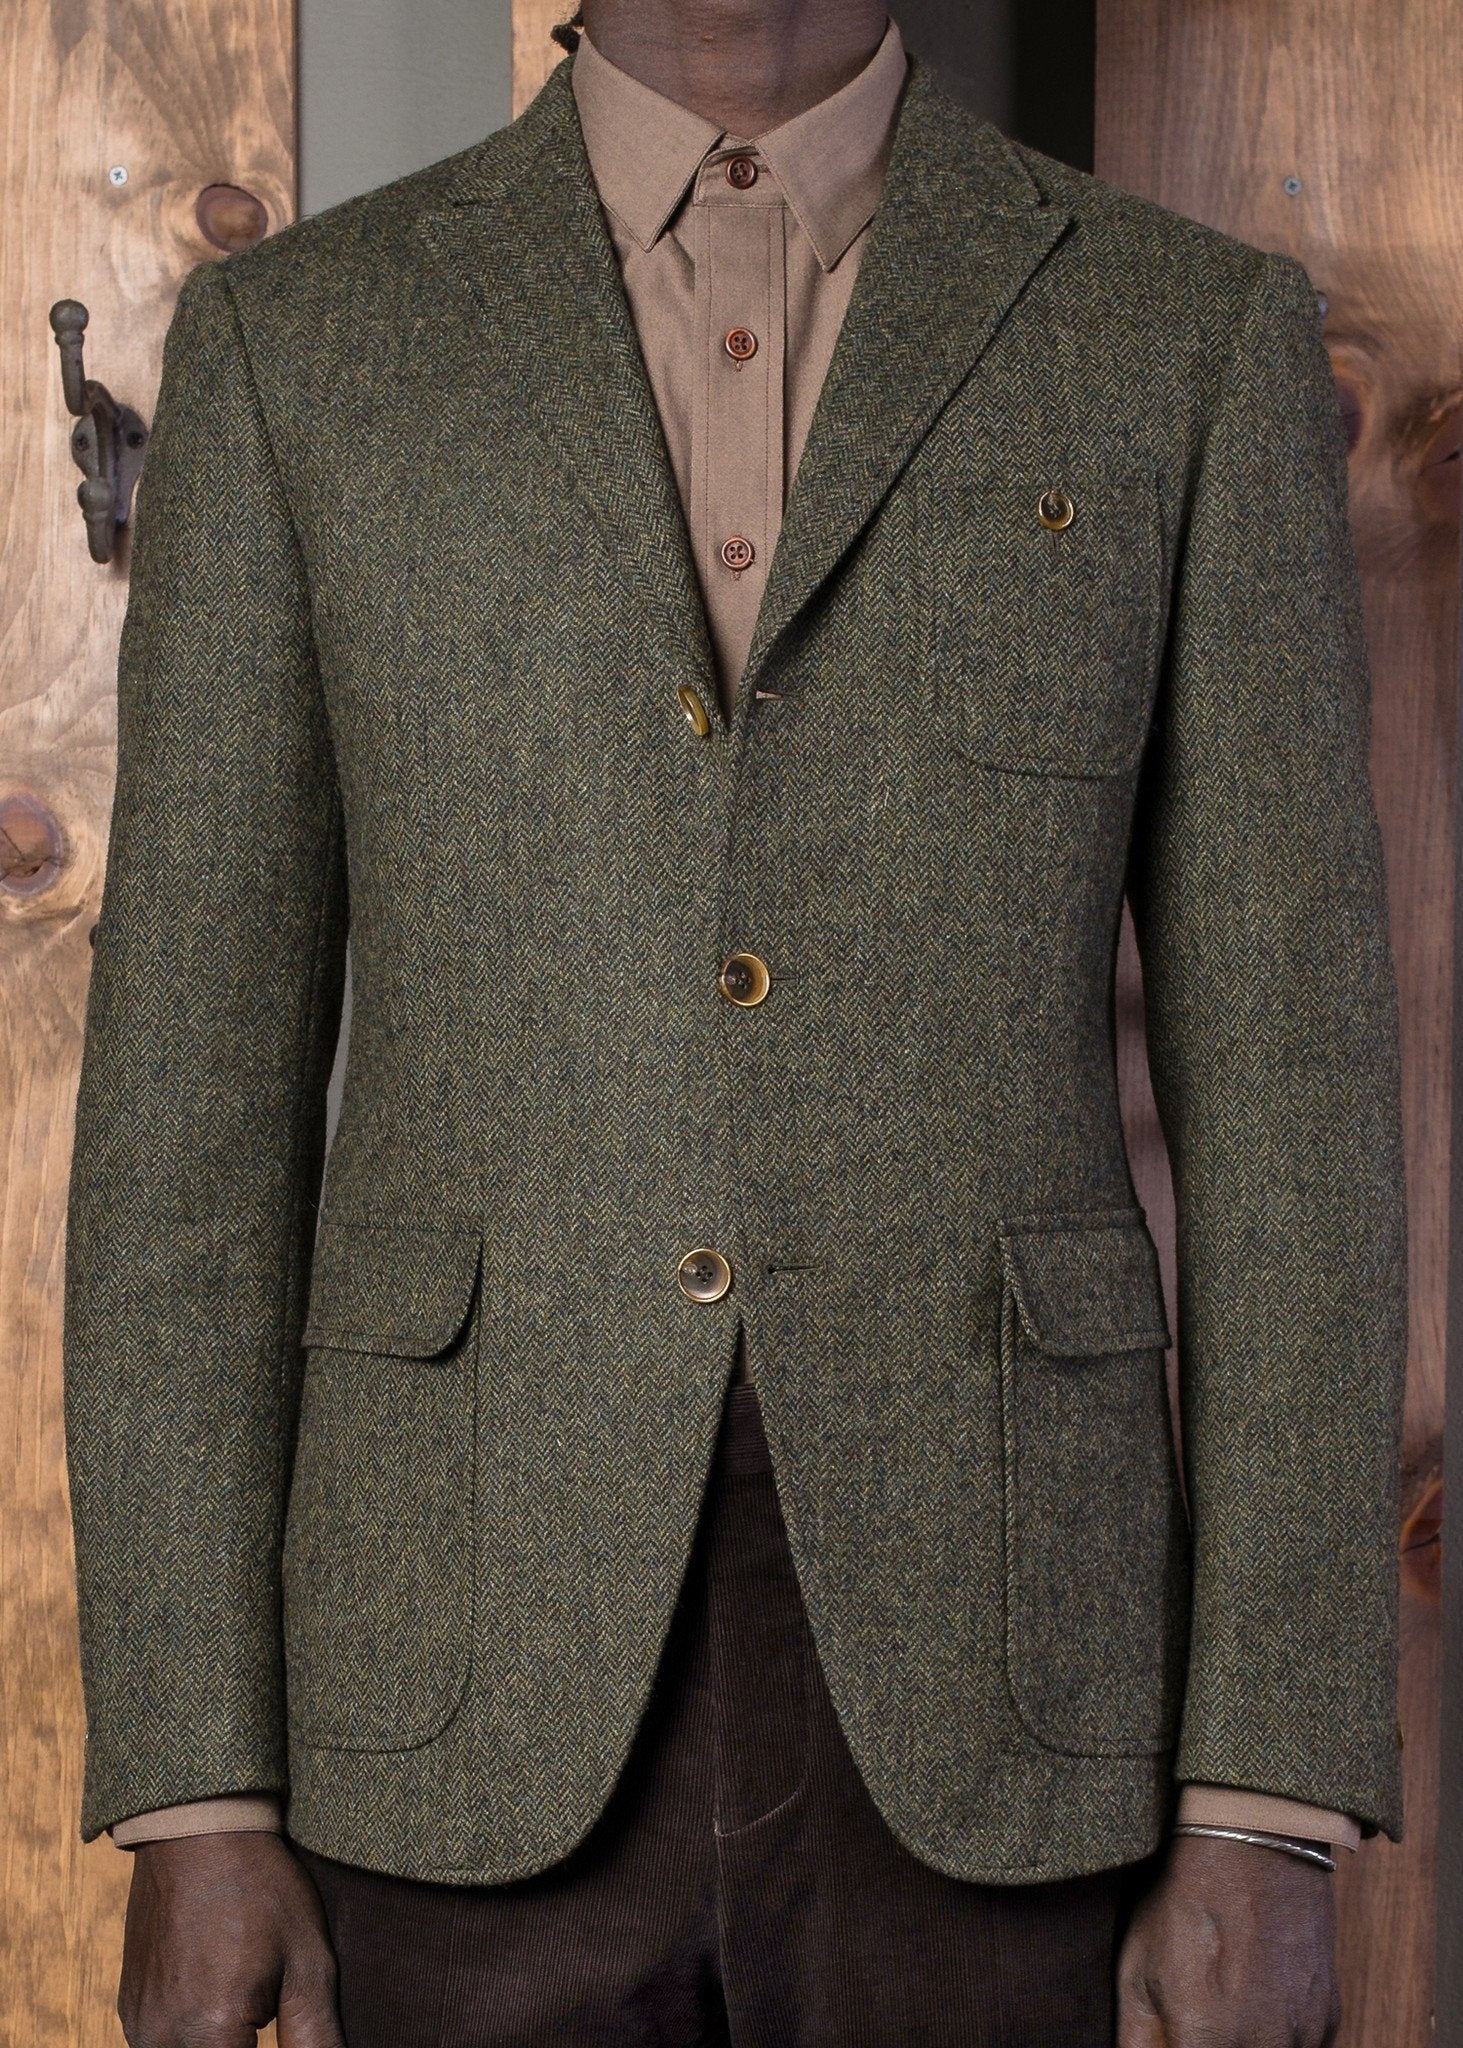 Vintage Tweed Jacket